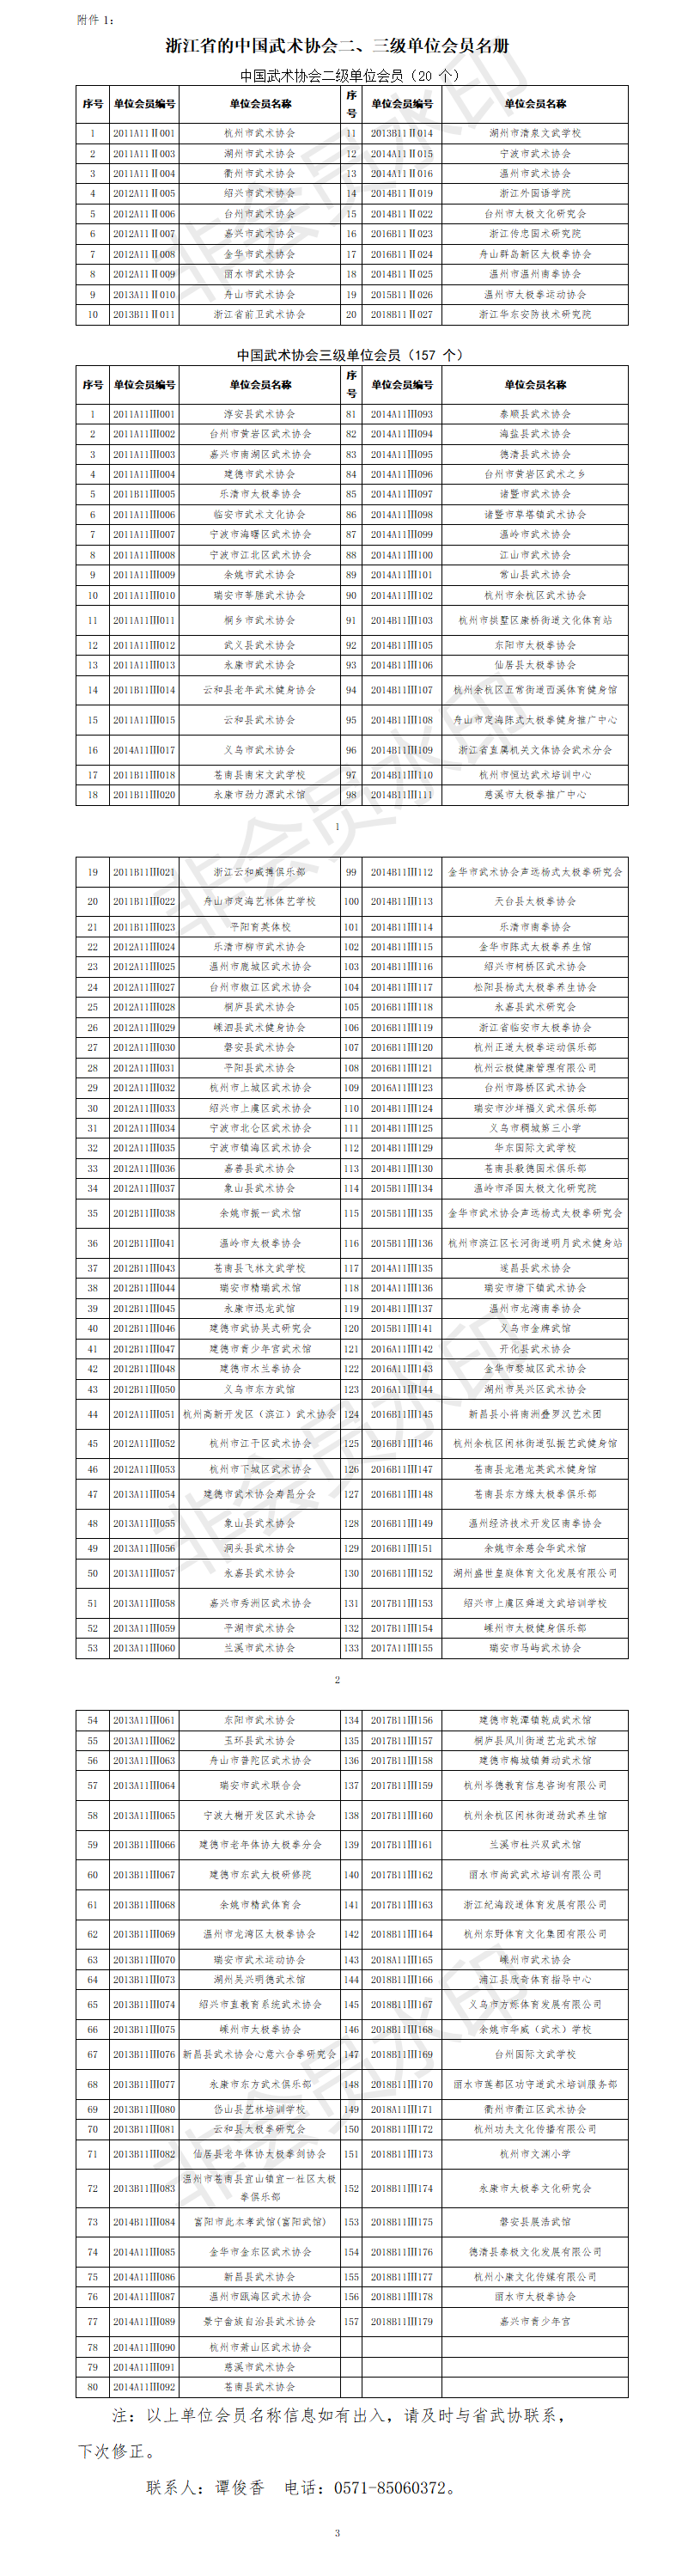 附件1、浙江省的中国武术协会二、三级单位会员名册.png